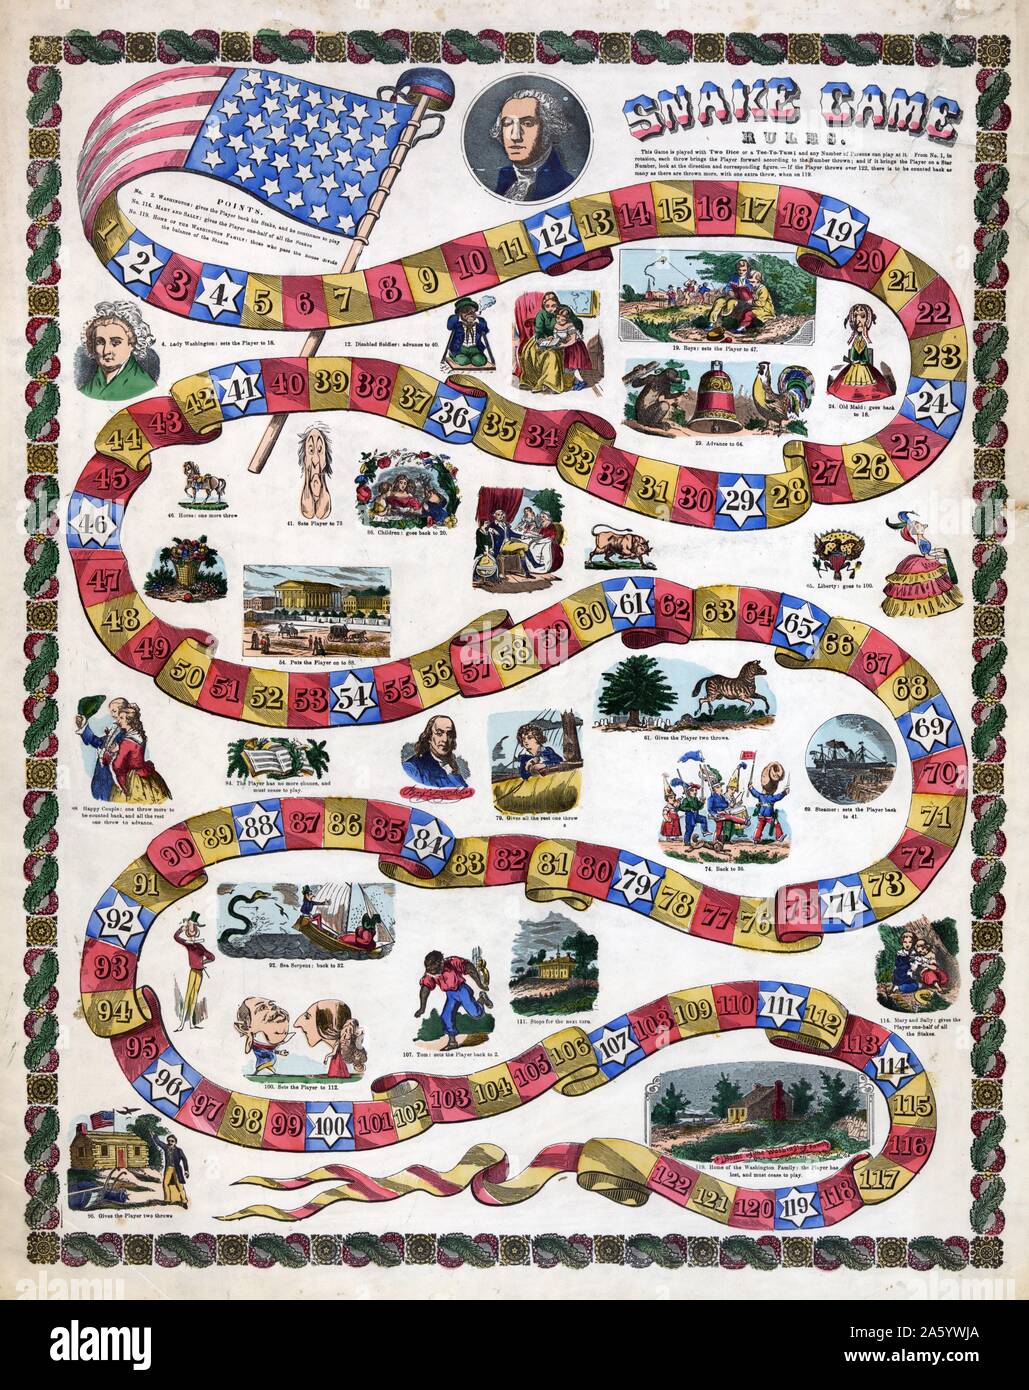 Snake Spiel Regeln. Zwischen 1840 und 1860 veröffentlicht. Holzschnitt, handkoloriert. Drucken Sie, zeigt ein Spielbrett mit rot, gold und blau Räume, nummeriert von 1 bis 122; auf dem Brett sind Abbildungen, die sind nummeriert und entsprechen den blauen "spielte" Räume, die Aktion Punkte, der Spieler, die Landung auf einem folgt der Anweisungen, die mit der entsprechenden Abbildung sind und verschiebt sich entsprechend. Zu Beginn des Spiels ist ein Porträt von George Washington und am Ende, ein rustikal aussehende Gehöft gekennzeichnet als das "home of the Washington Family." Stockfoto